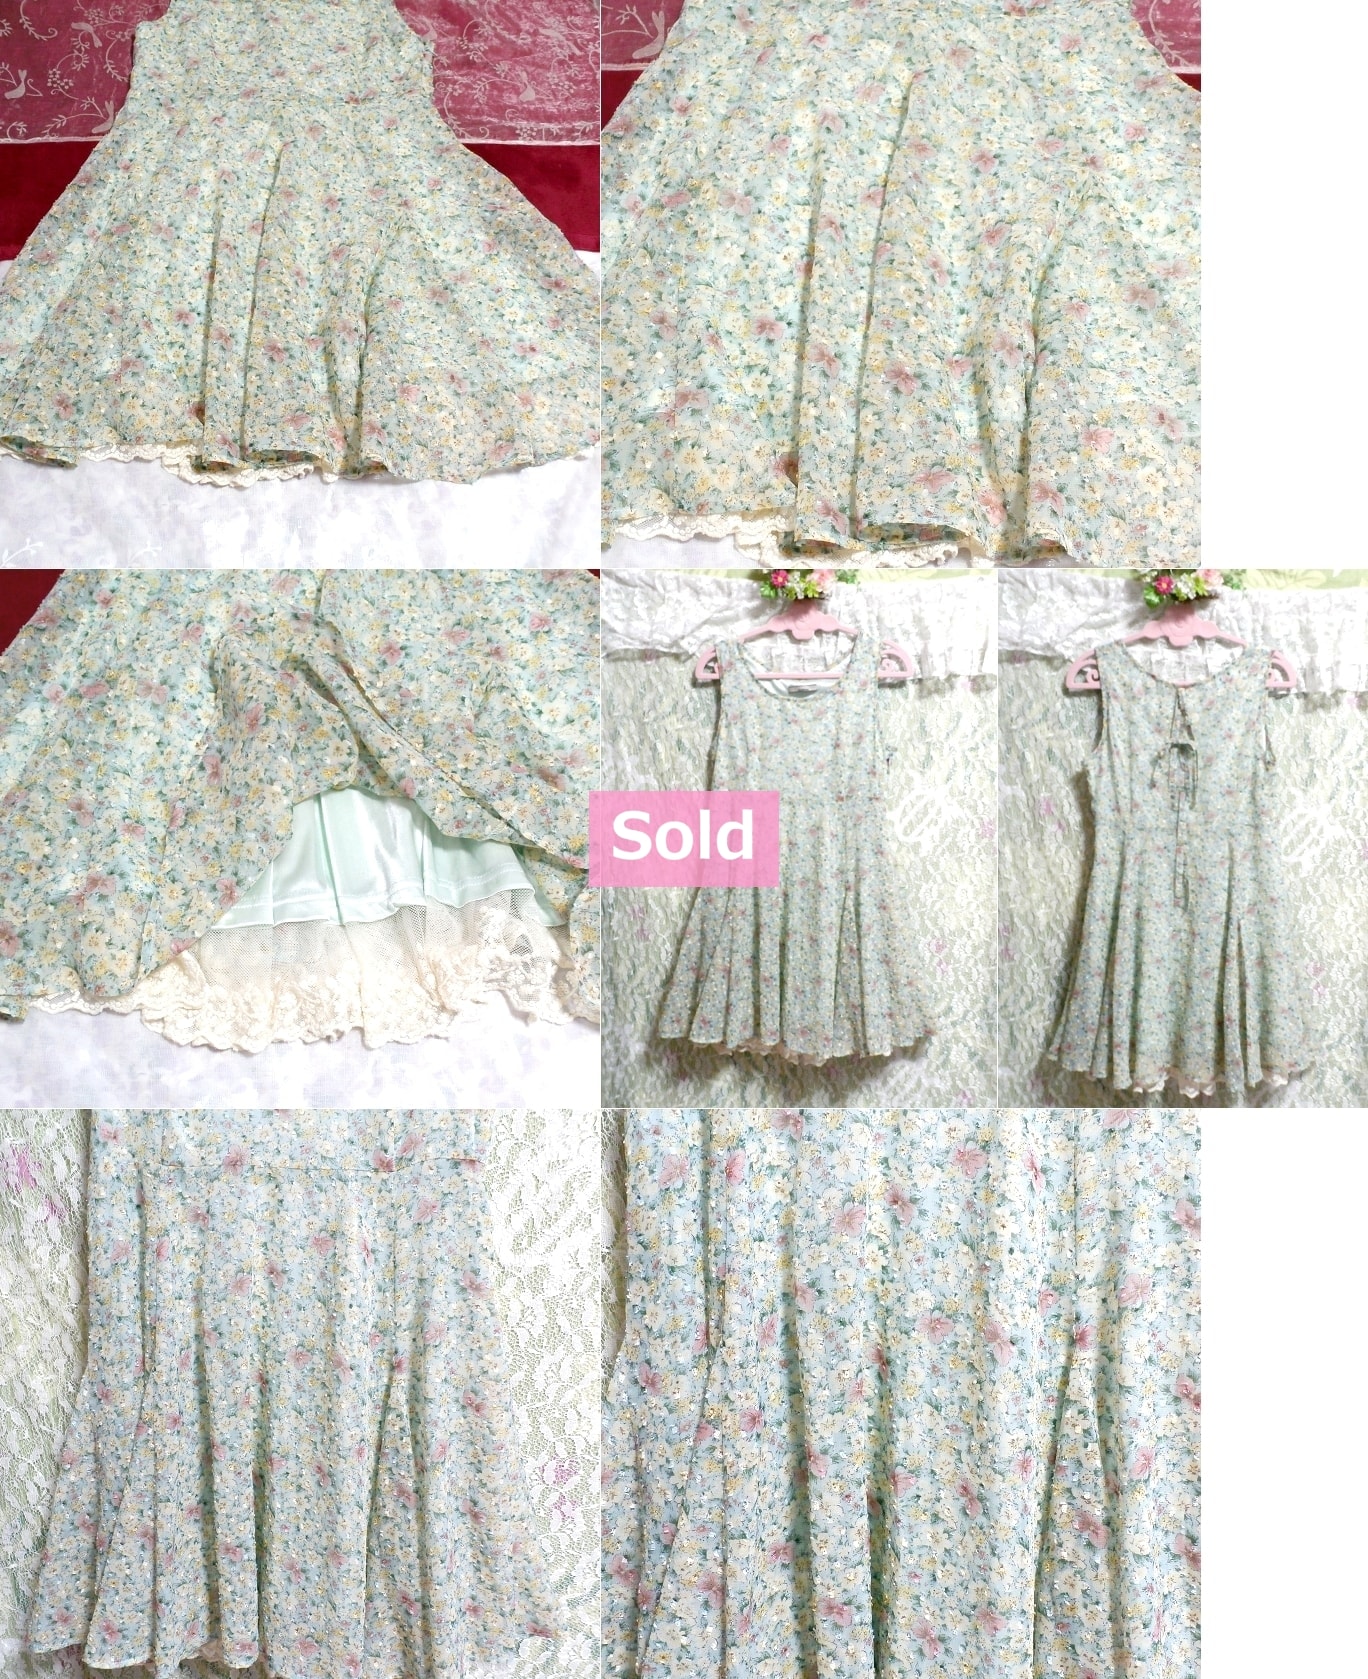 緑グリーン花柄シフォンミニスカートワンピース/チュニック Green floral pattern chiffon sleeveless mini skirt onepiece/tunic